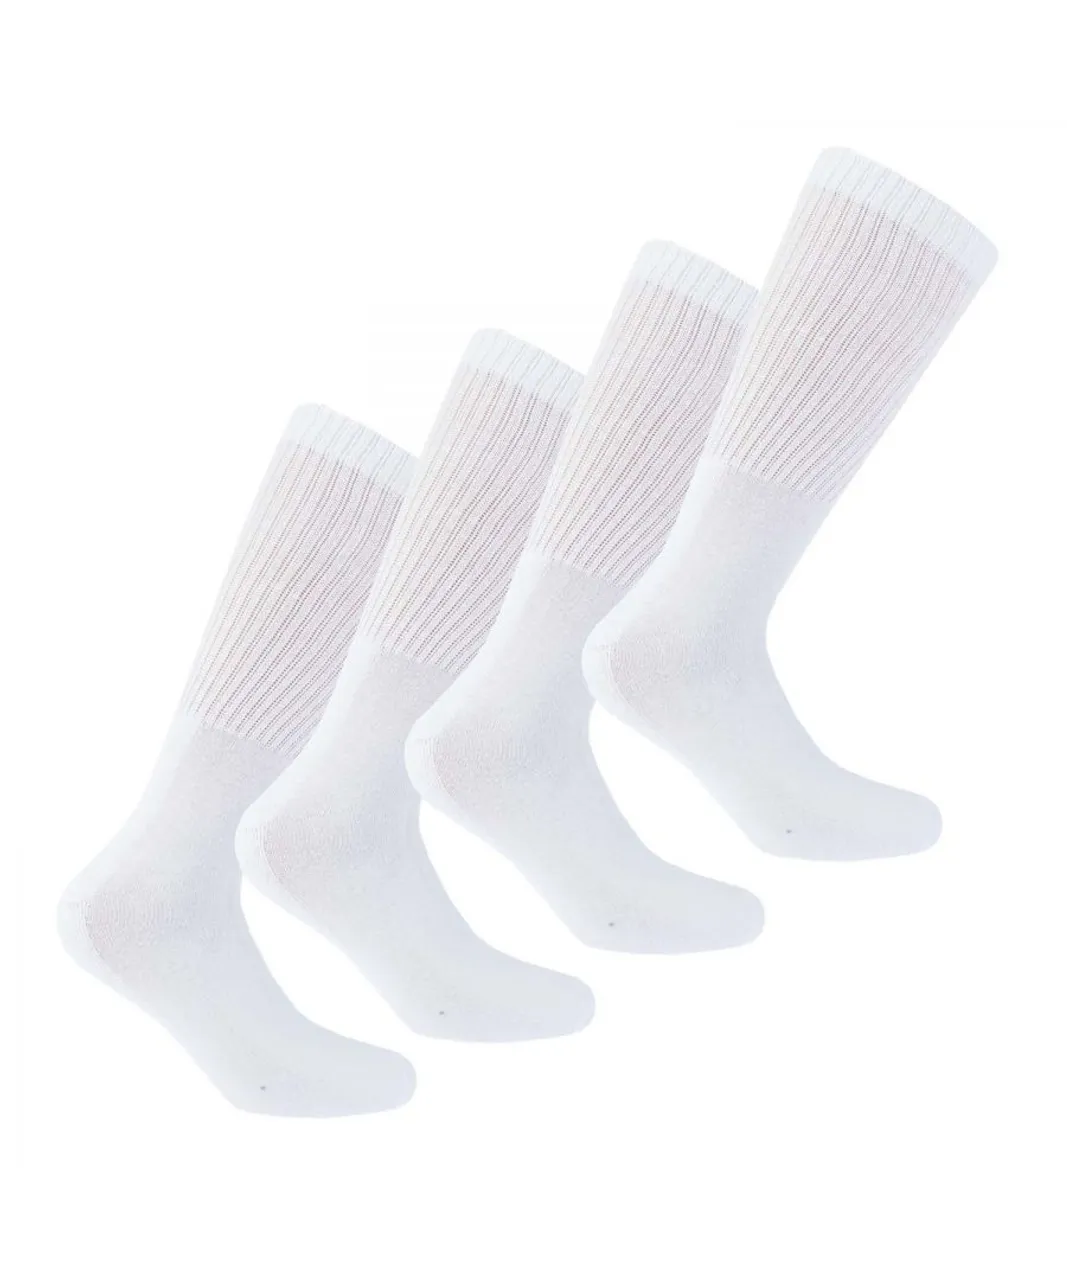 DKNY Mens Radde 3 Pack Sport Socks in White Cotton